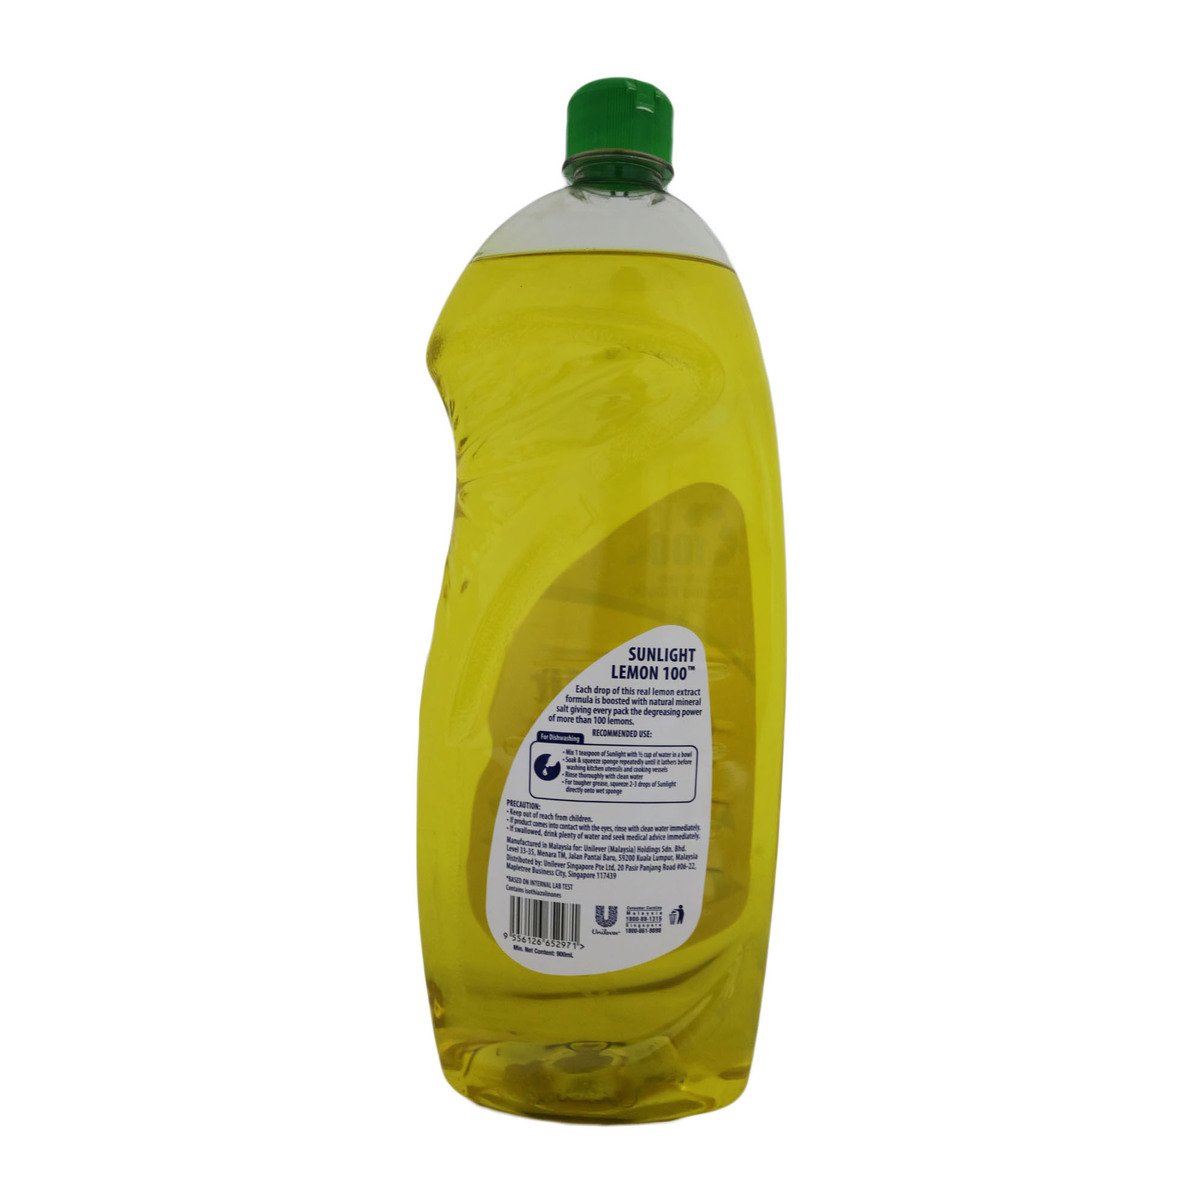 Sunlight Dishwash Liquid Lemon 800ml